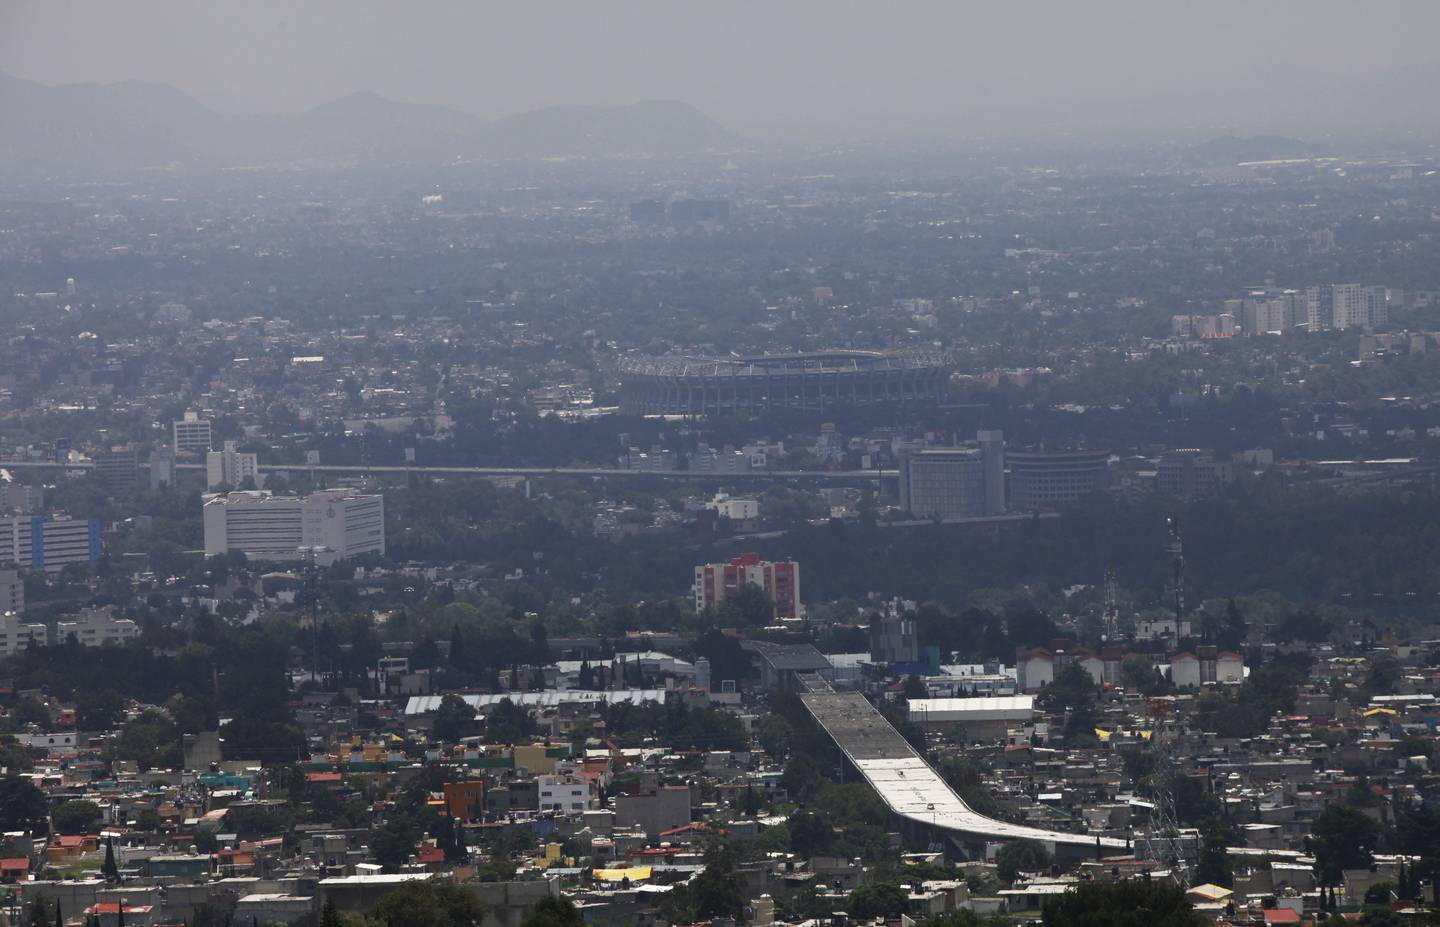 La contaminación del aire se cierne sobre la Ciudad de México, el sábado 9 de julio de 2016. Las autoridades emitieron una nueva alerta de smog para la capital después de que los niveles de ozono aumentaron a casi el doble de los límites aceptables. El Estadio Azteca está al fondo.(AP Photo/Marco Ugarte)